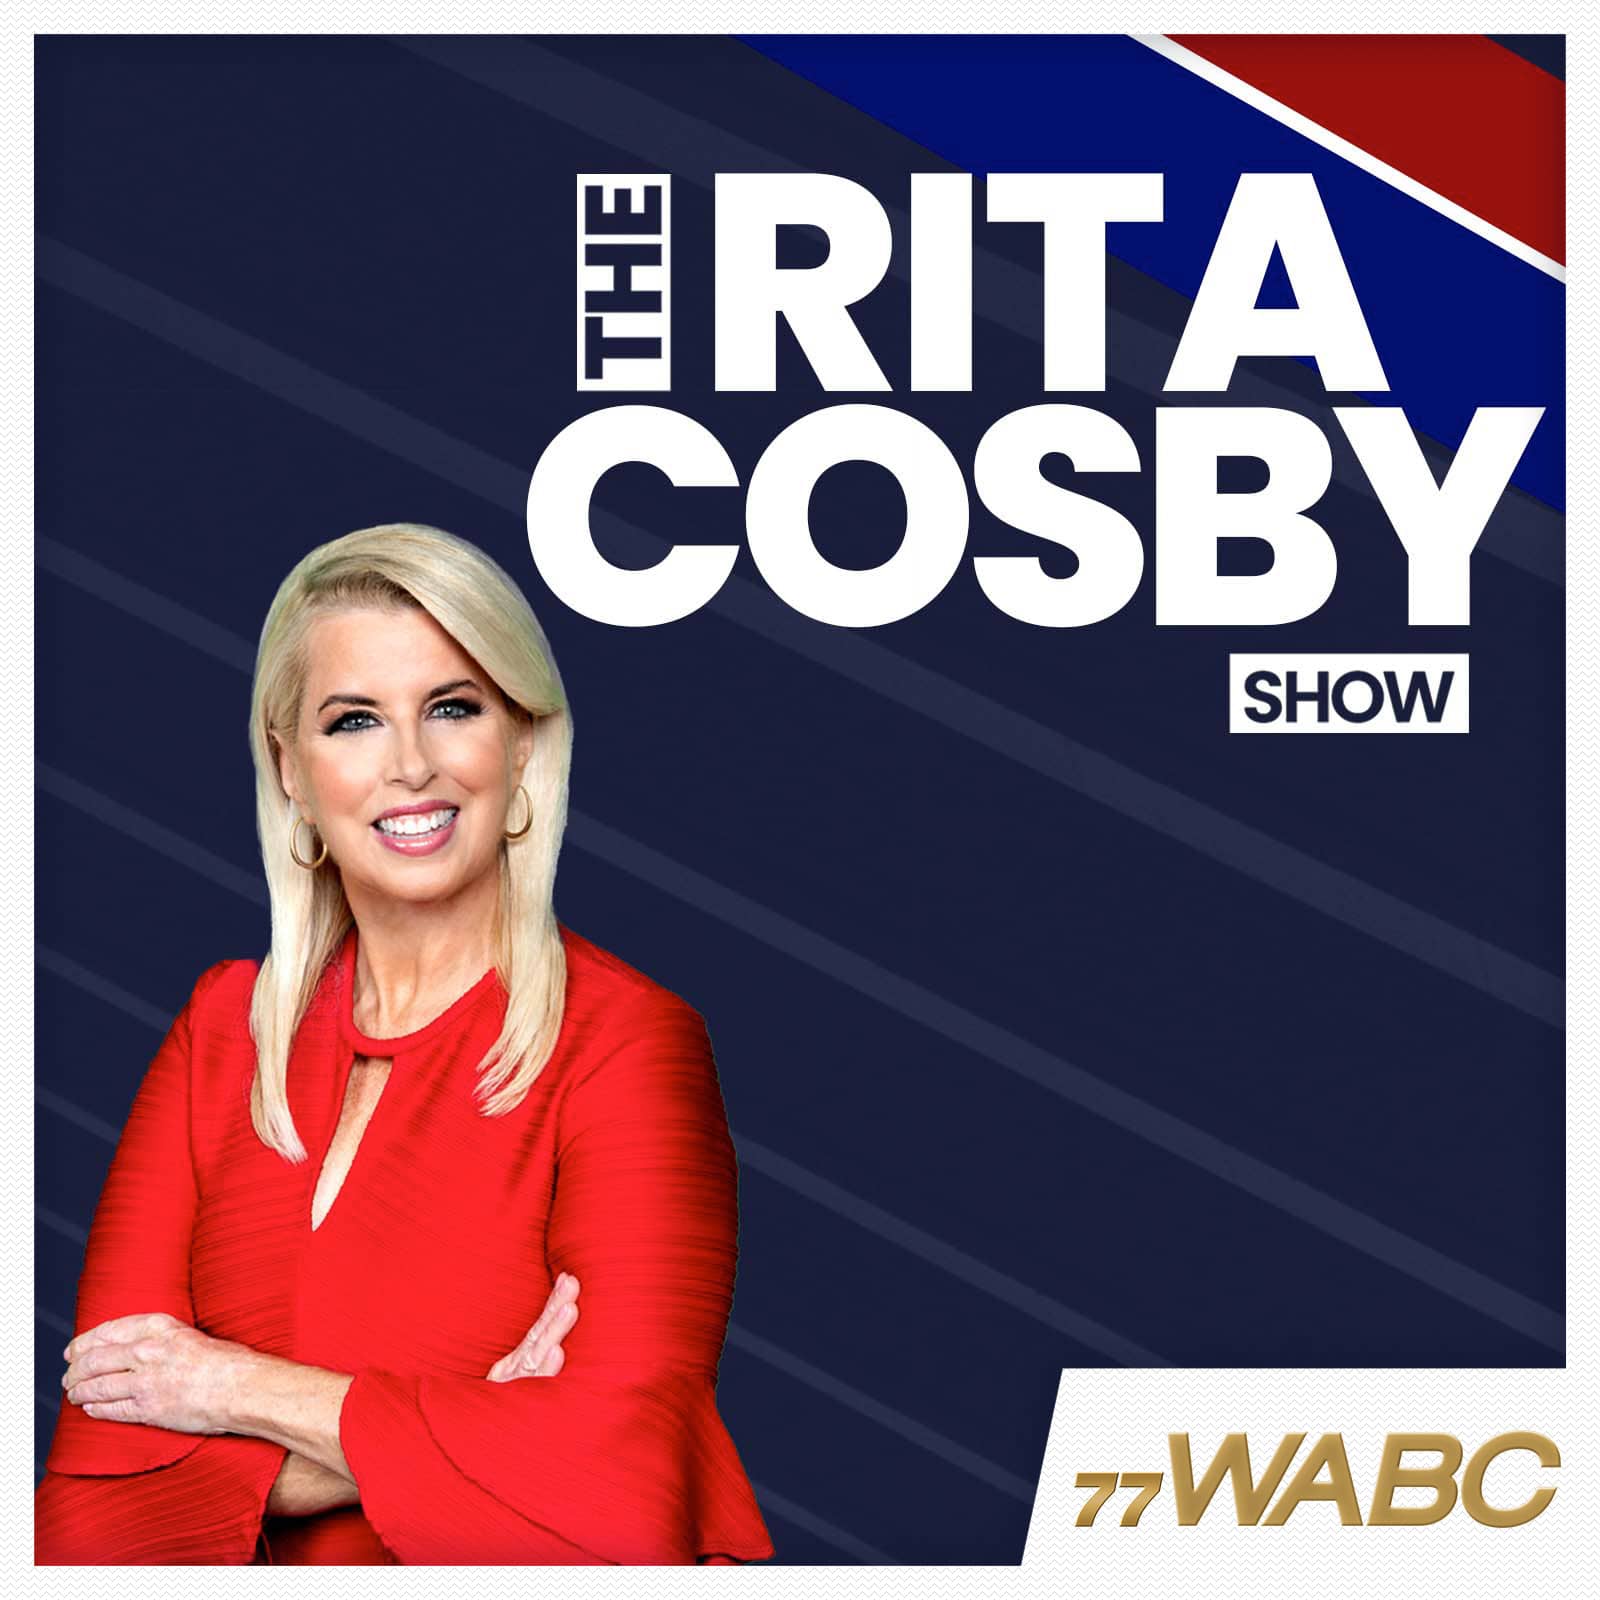 rita-cosby-podcast-new-logo343501